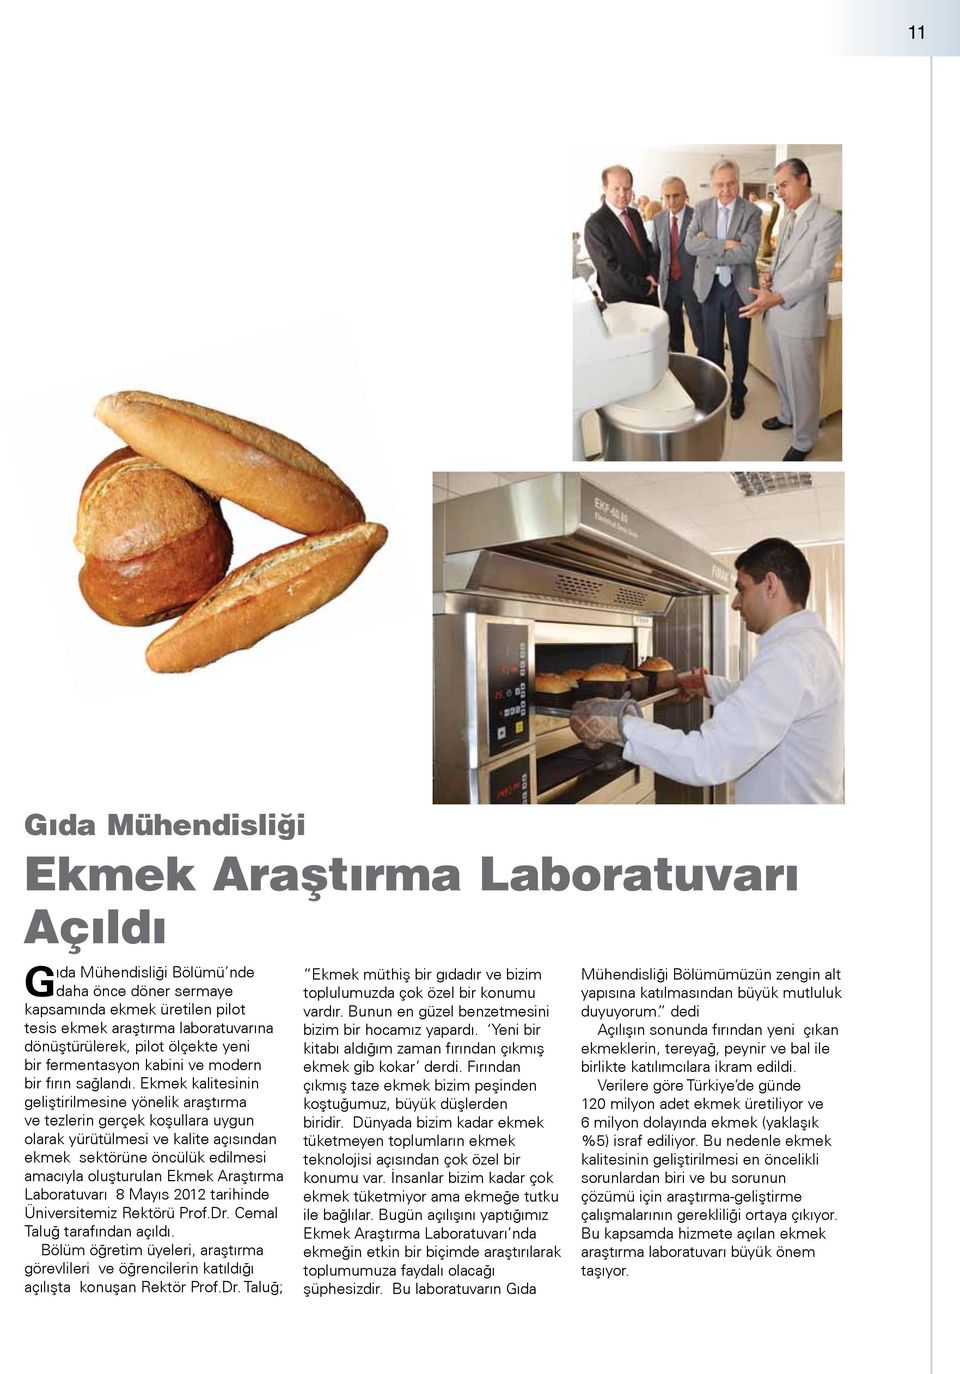 Ekmek kalitesinin geliştirilmesine yönelik araştırma ve tezlerin gerçek koşullara uygun olarak yürütülmesi ve kalite açısından ekmek sektörüne öncülük edilmesi amacıyla oluşturulan Ekmek Araştırma